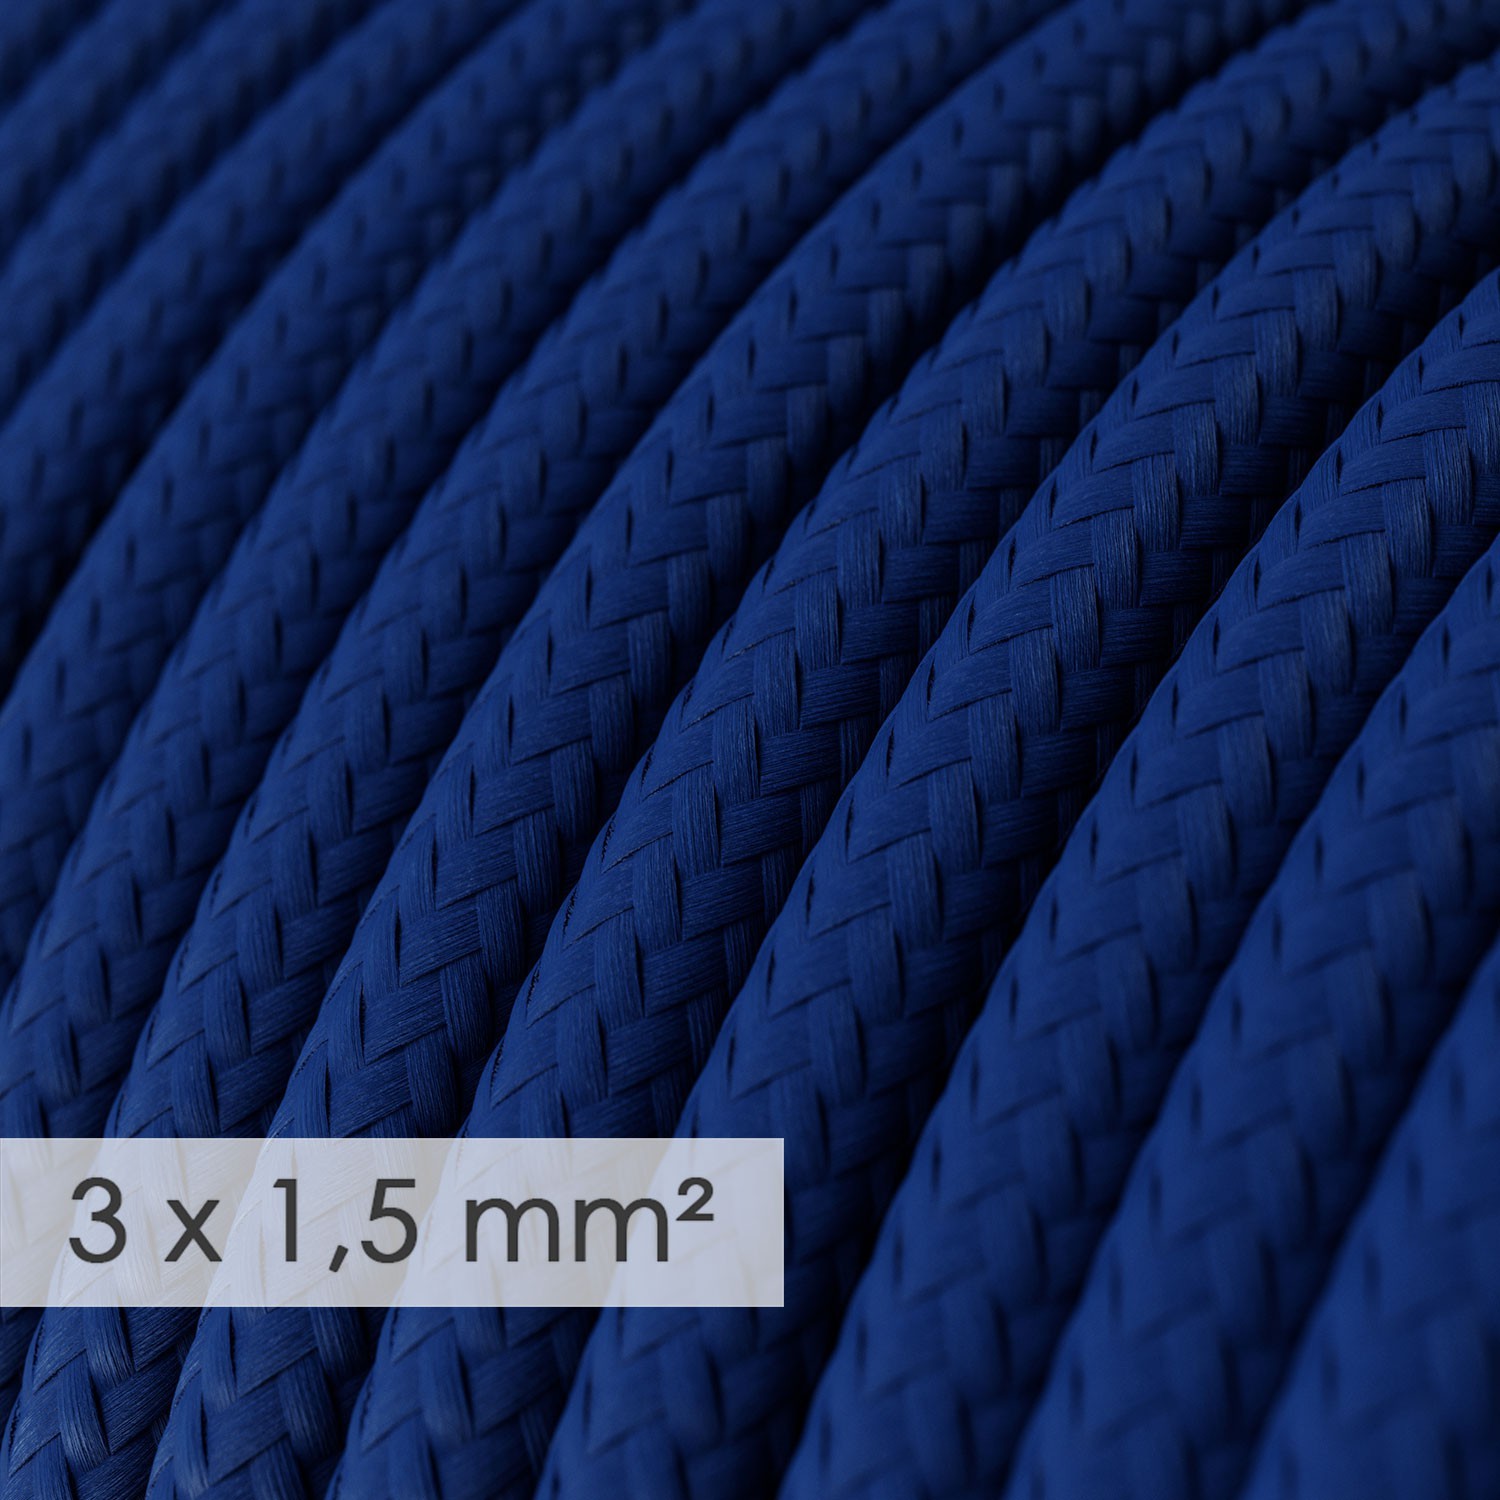 Multienchufe alemán con cable en tejido efecto seda Azul RM12 y clavija Schuko con anillo comfort